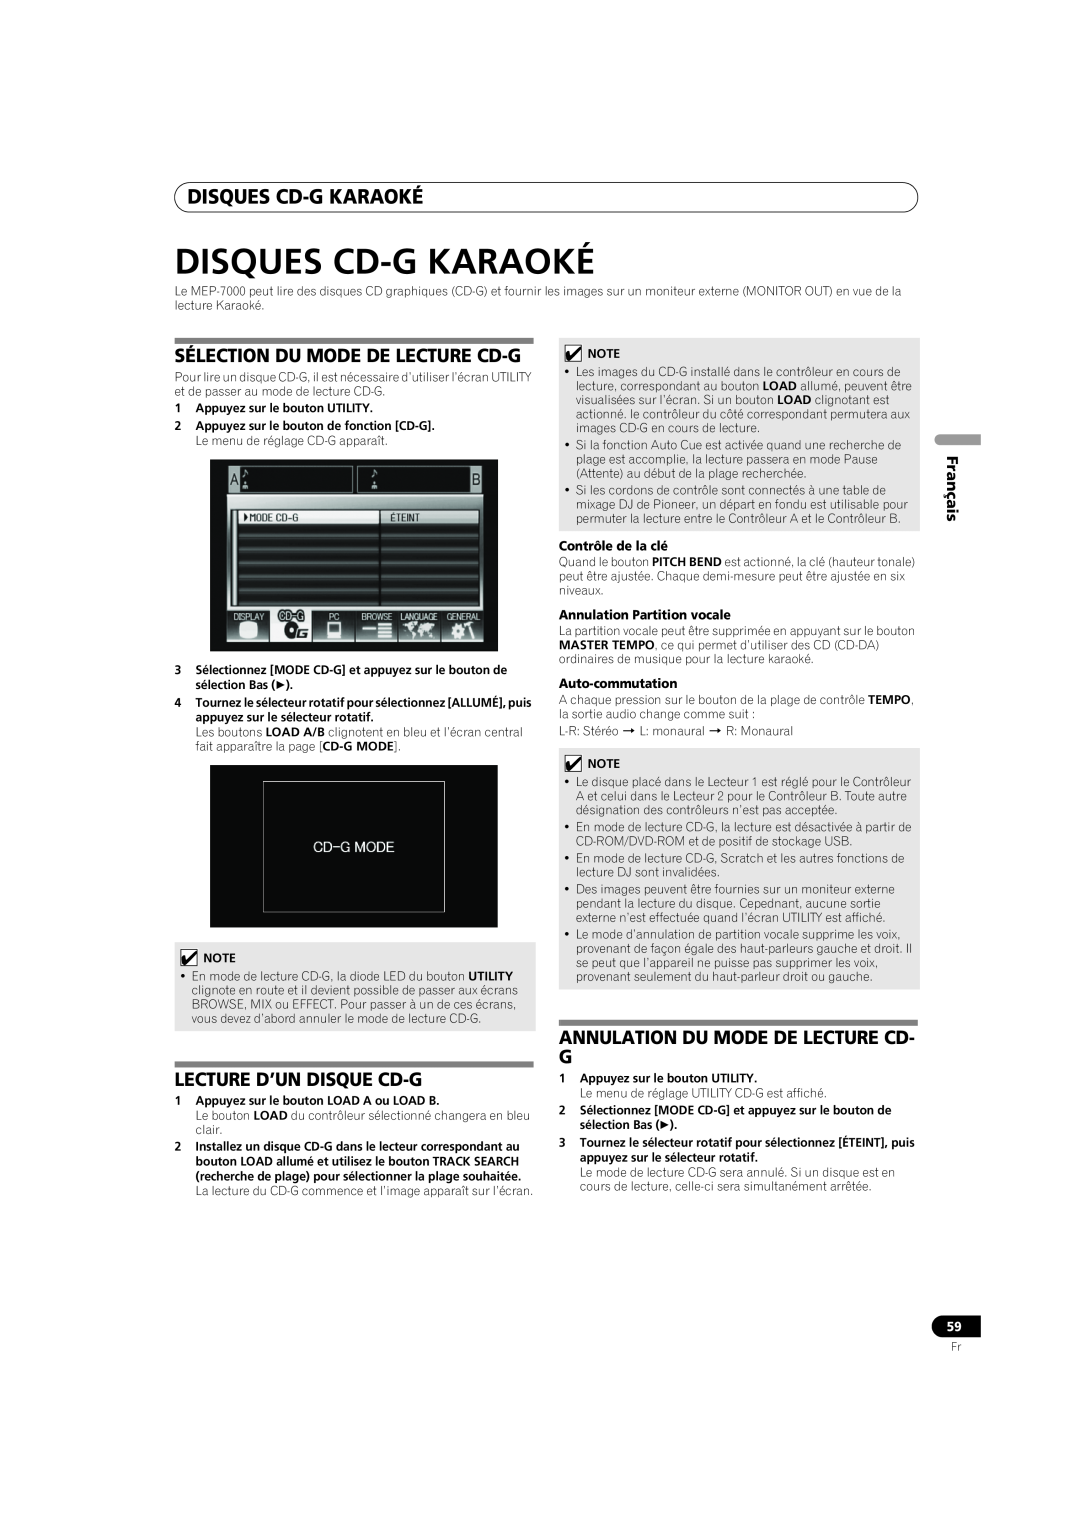 Pioneer MEP-7000 Disques Cd-Gkaraoké, Sélection Du Mode De Lecture Cd-G, Lecture D’Un Disque Cd-G, Français 